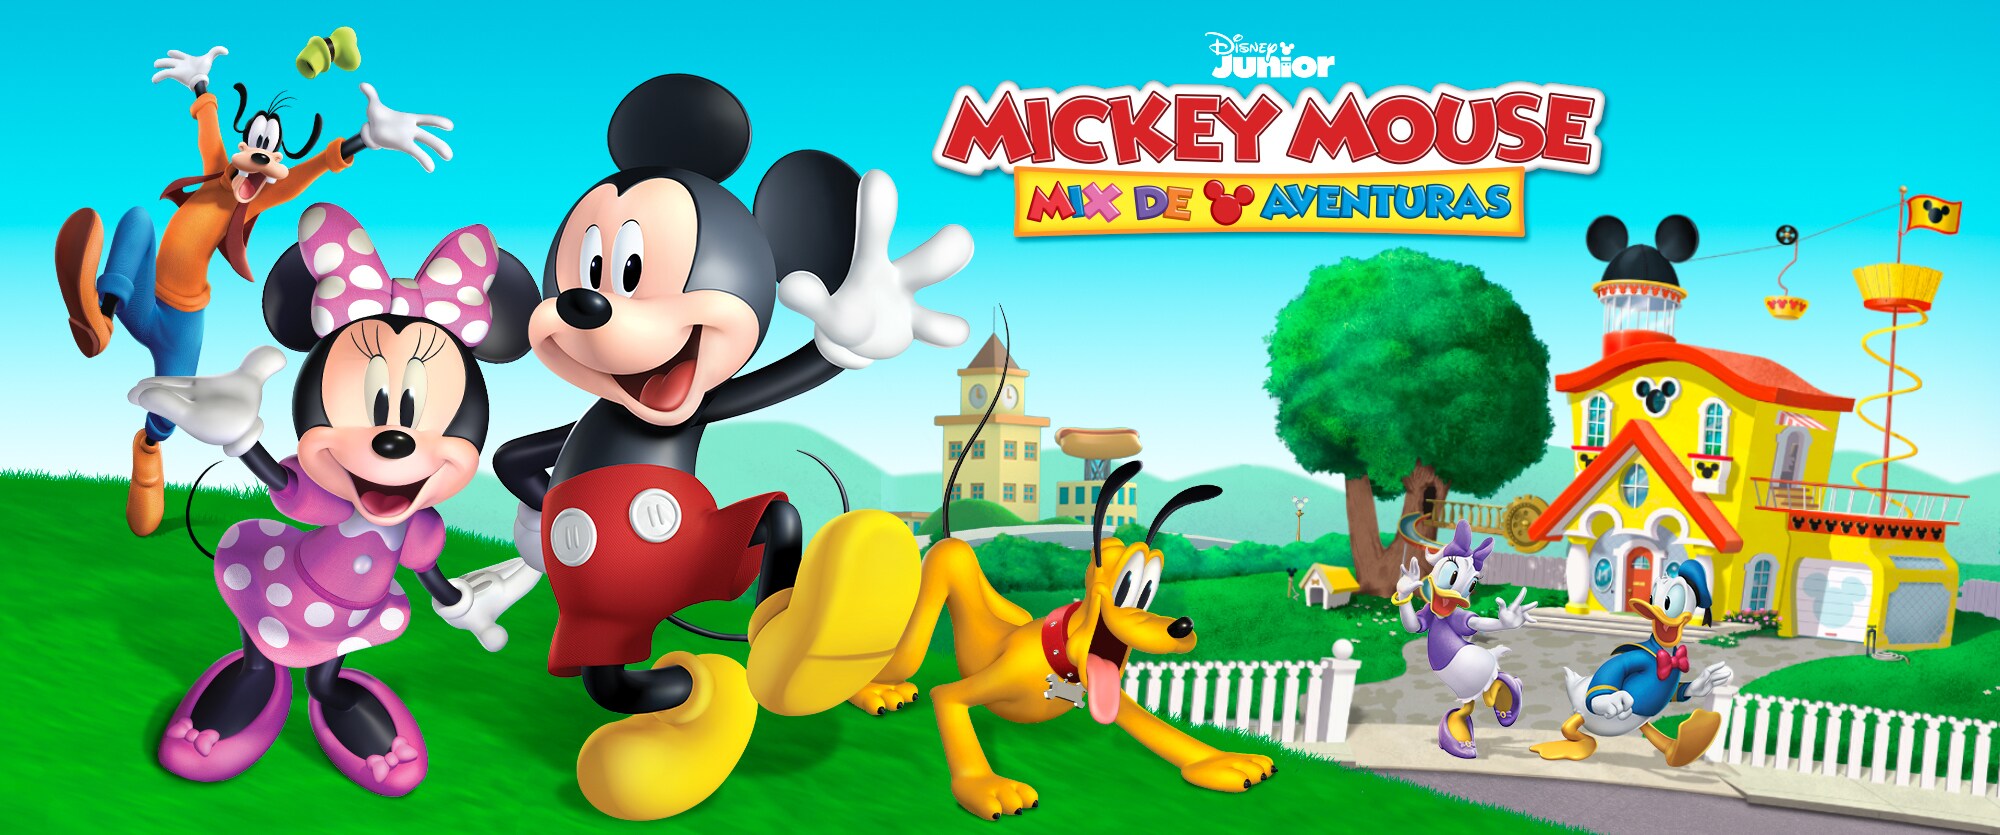 Aburrido Levántate Guante Mickey Mouse Mix de Aventuras | Disney Latino